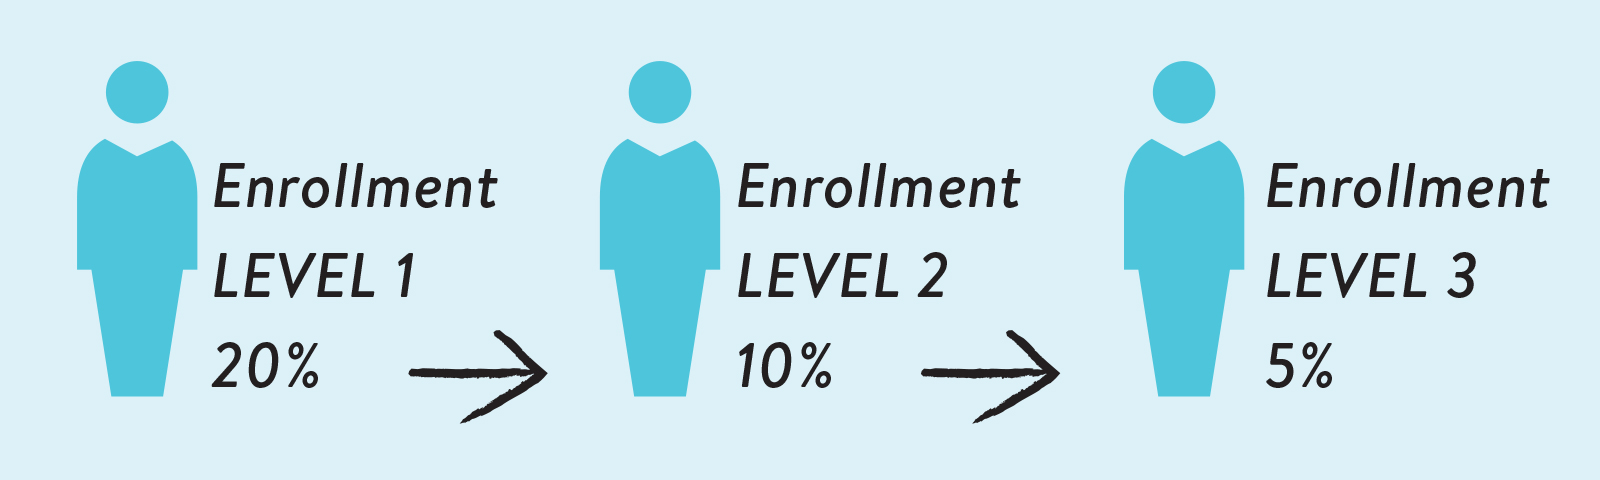 enrollment level 1 20 percent enrollment level 2 10 percent enrollment level 3 5 percent